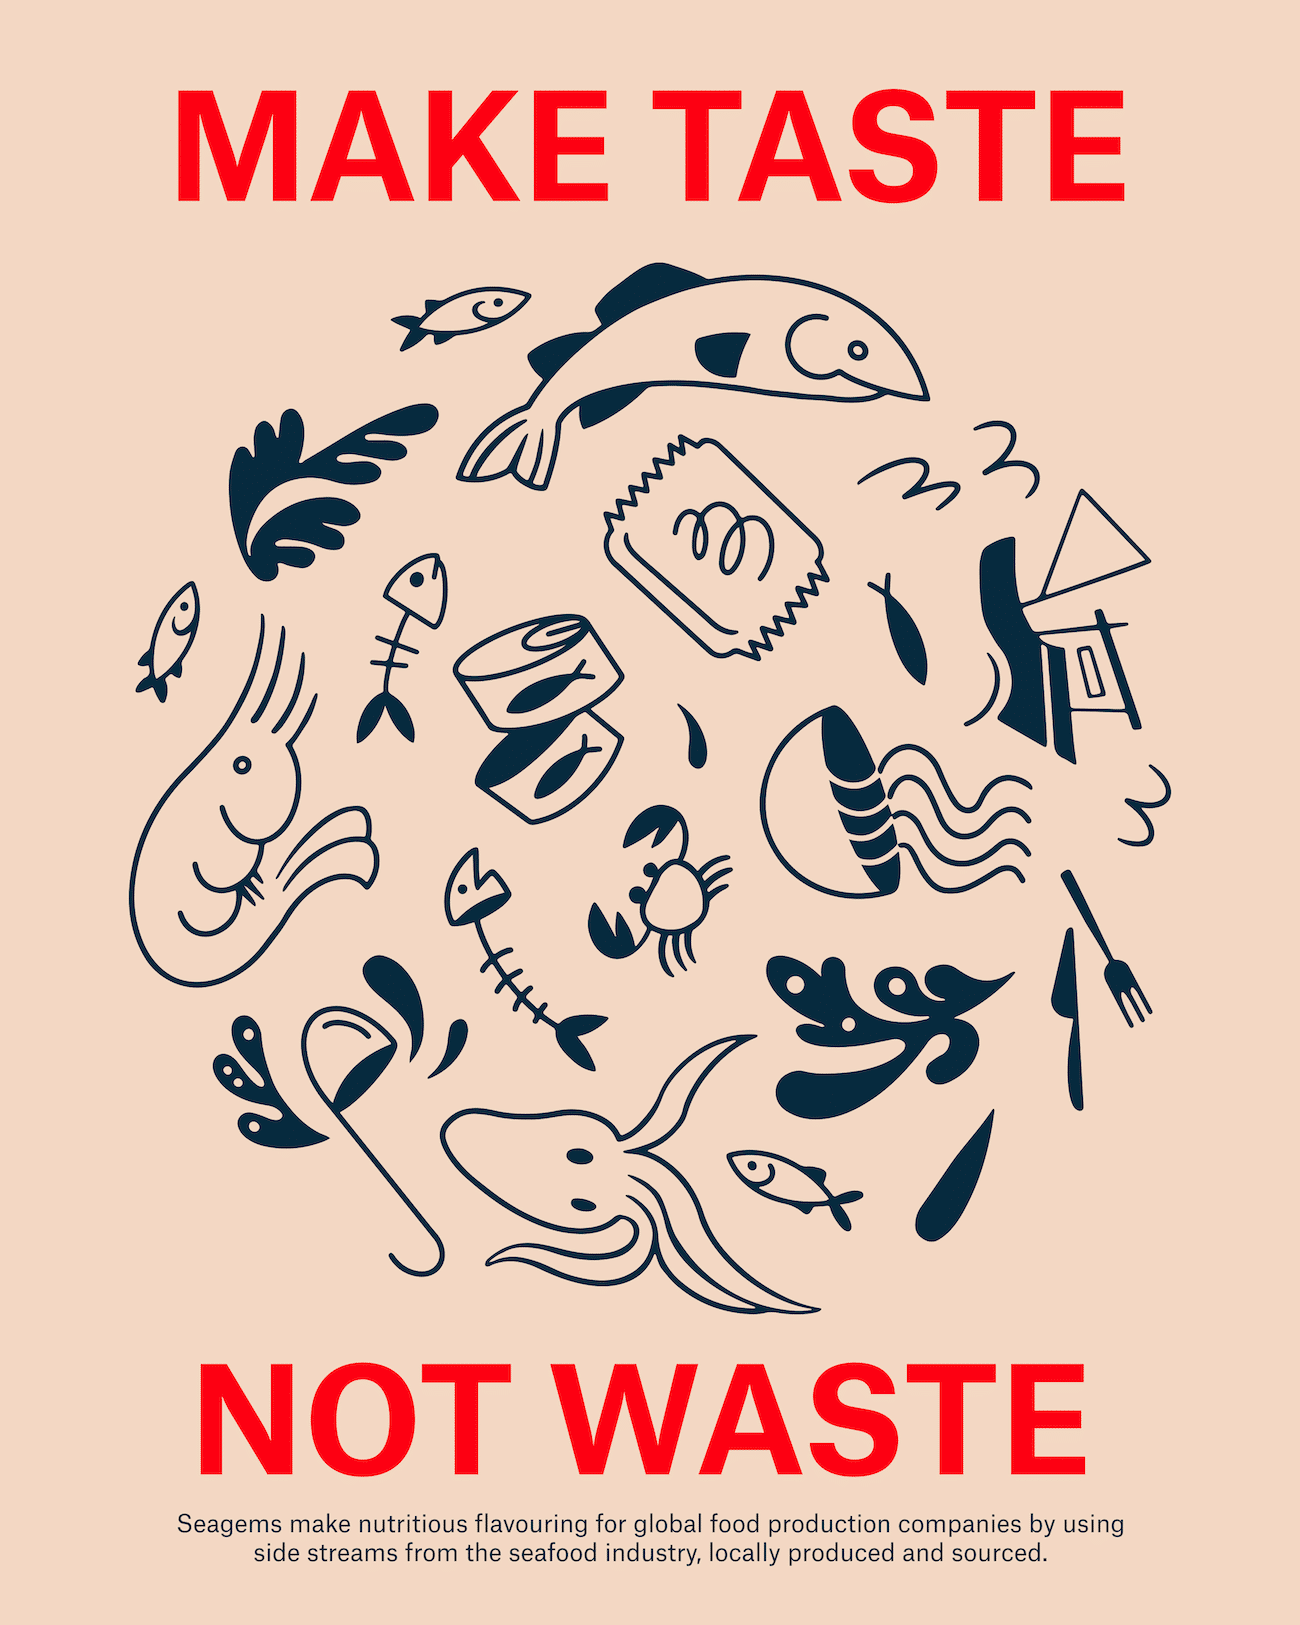 Seagems Flavor, Visual Identity, Plakatdesign mit Illustrationen, Schrift: Make taste not war